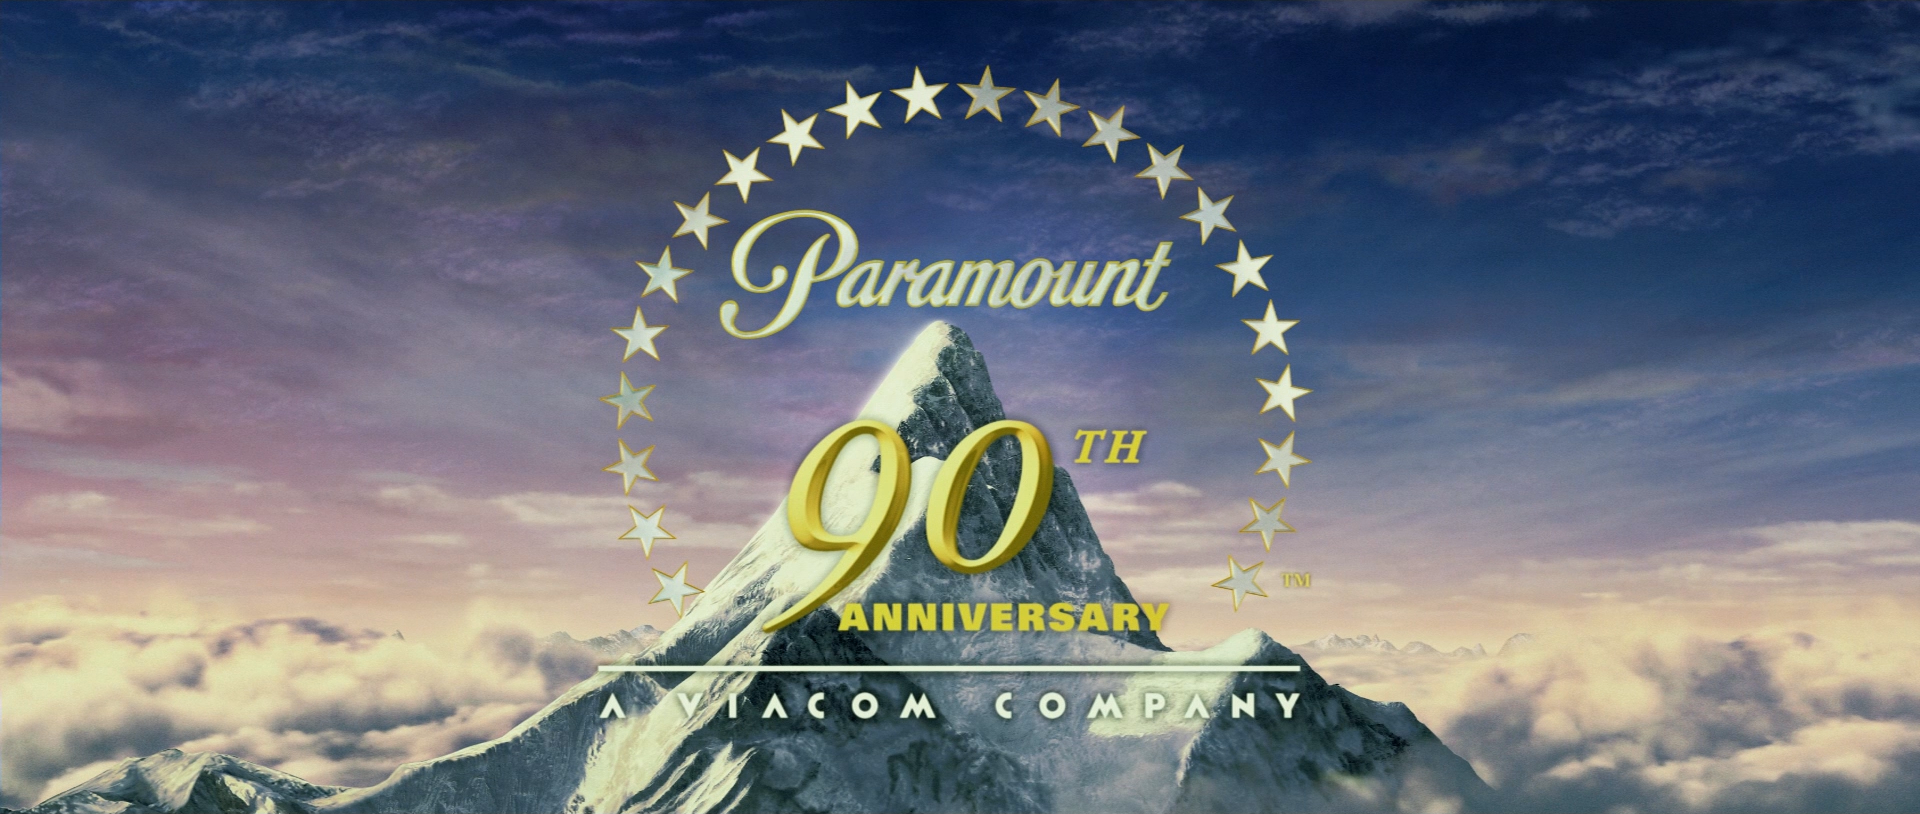 paramount 90th anniversary a viacom company